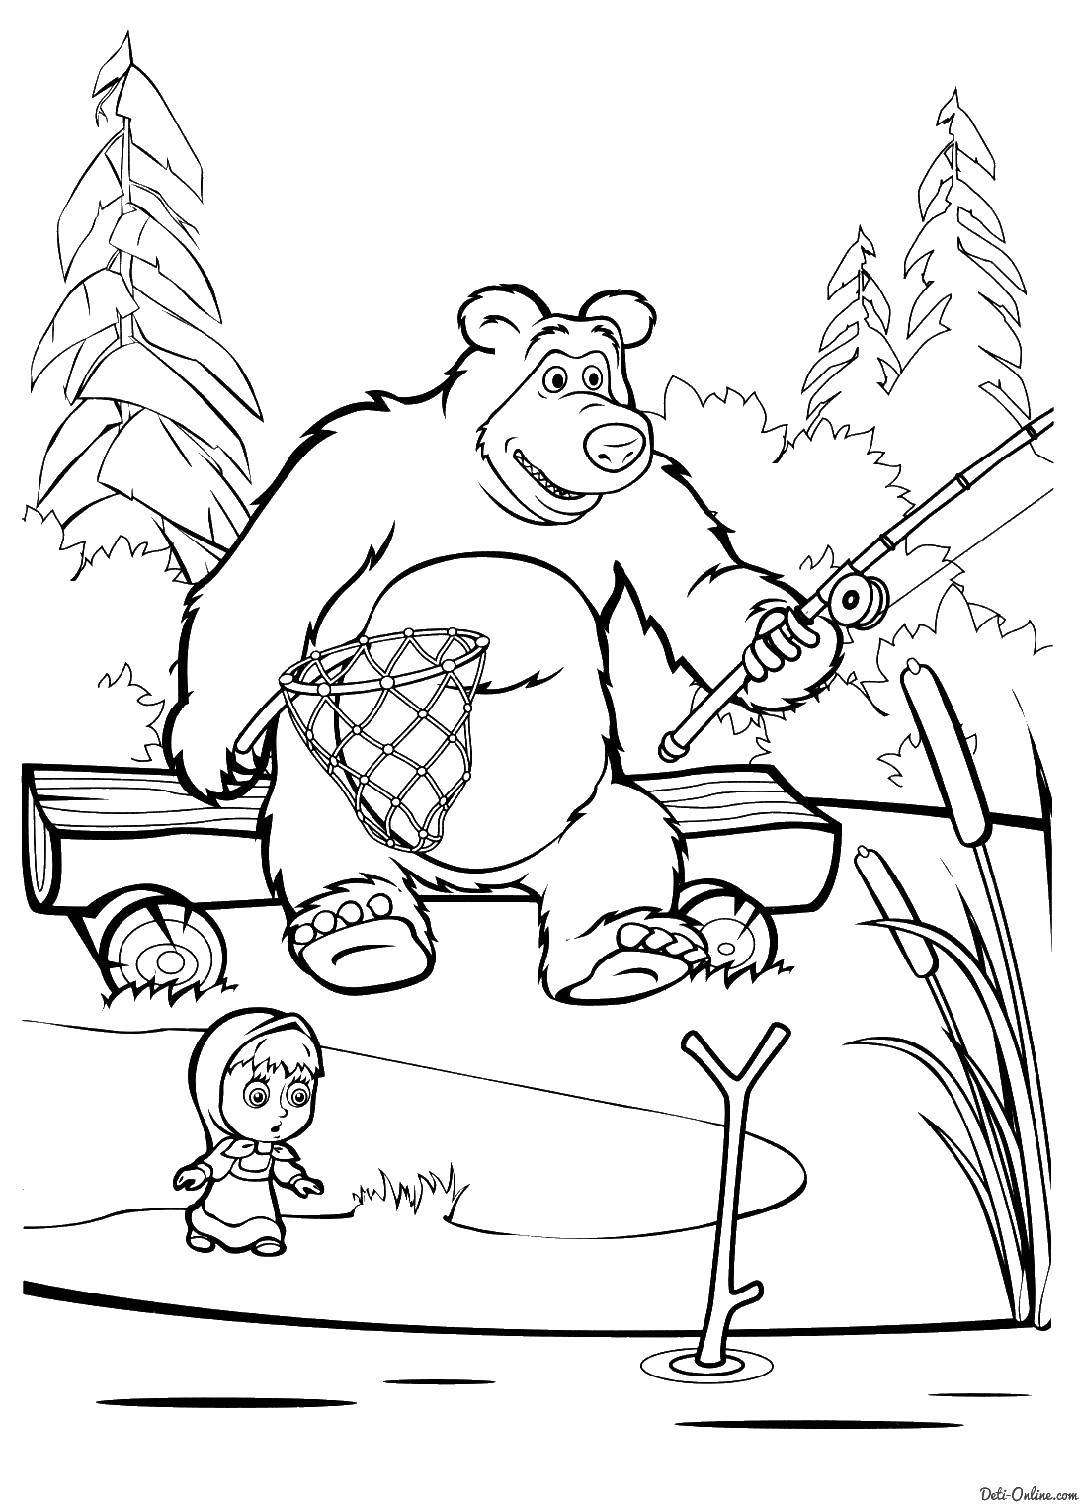 Раскраски для детей про озорную Машу из мультфильма Маша и медведь  Маша и медведь на рыбалке